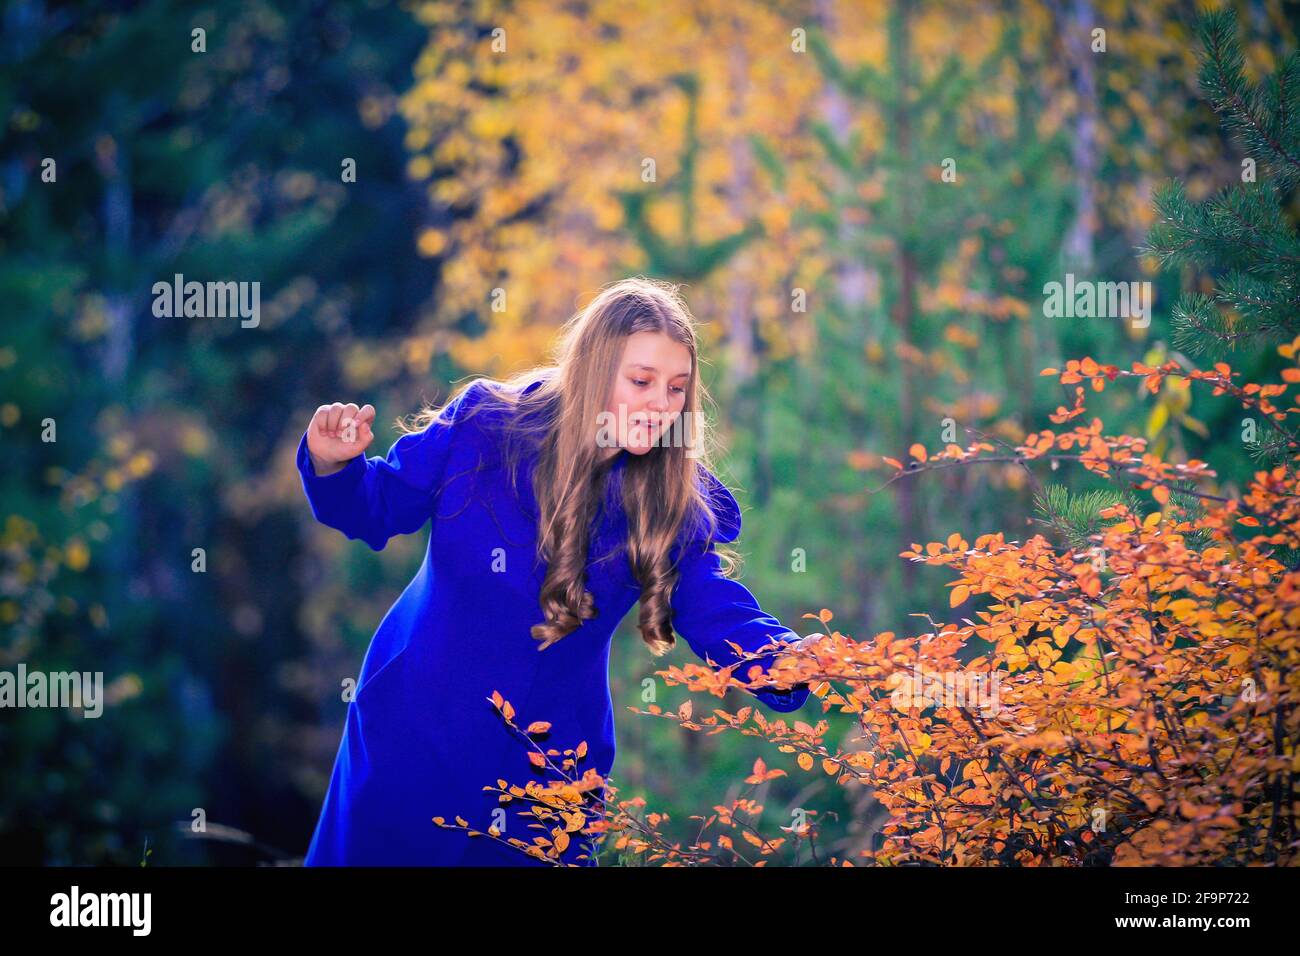 Ein junges Mädchen spaziert im Herbstpark, steht hinter einem Baum. Die Bäume haben gelbe Blätter. Stockfoto